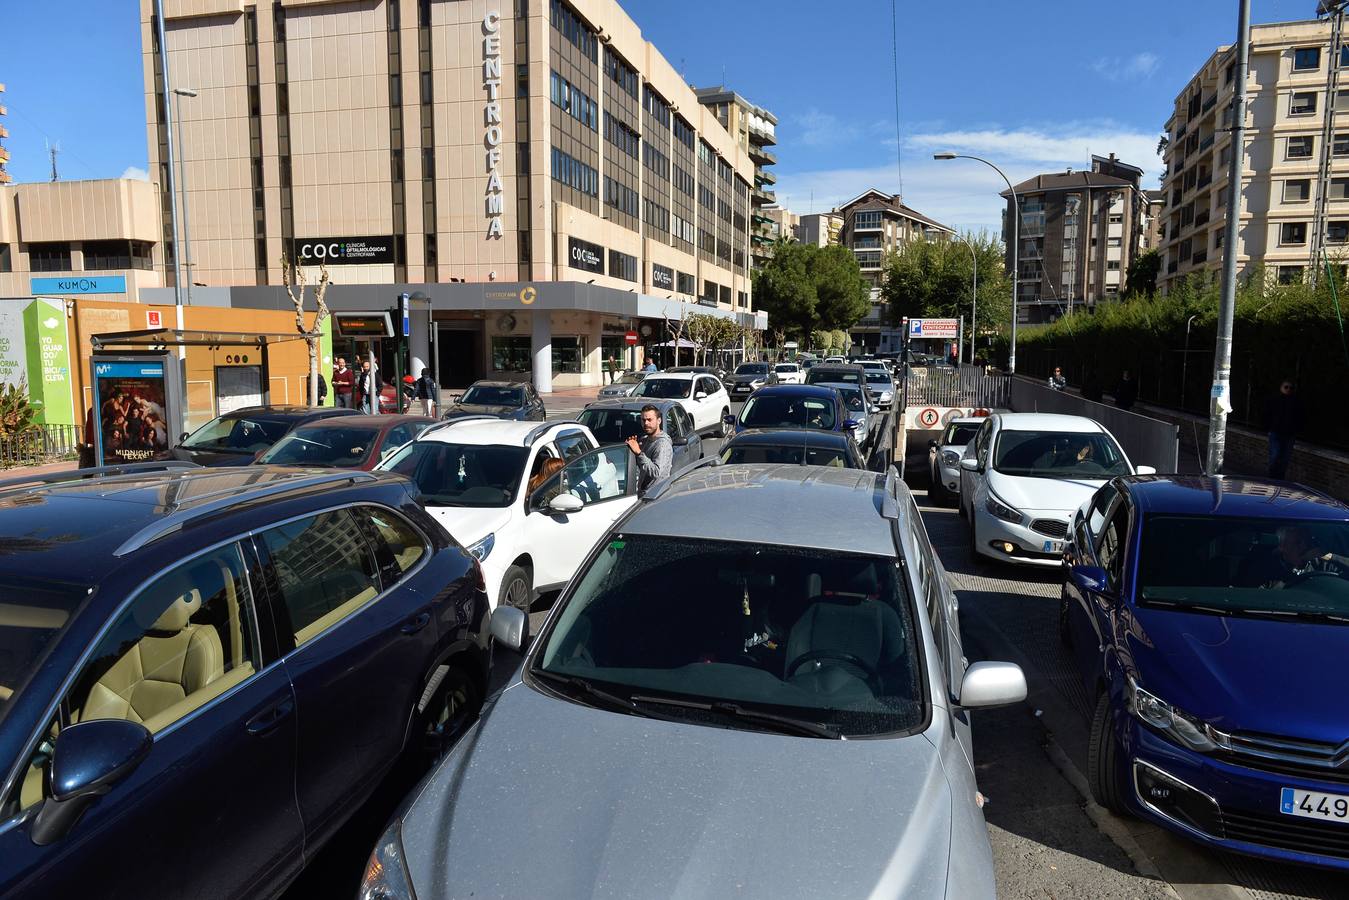 El caos de tráfico se impuso ayer en torno a las 9 de la mañana y poco antes de las 2 de la tarde, coincidiendo con las horas de entrada y salida de los alumnos de los dos colegios ubicados en ambos extremos de la nueva avenida Alfonso X